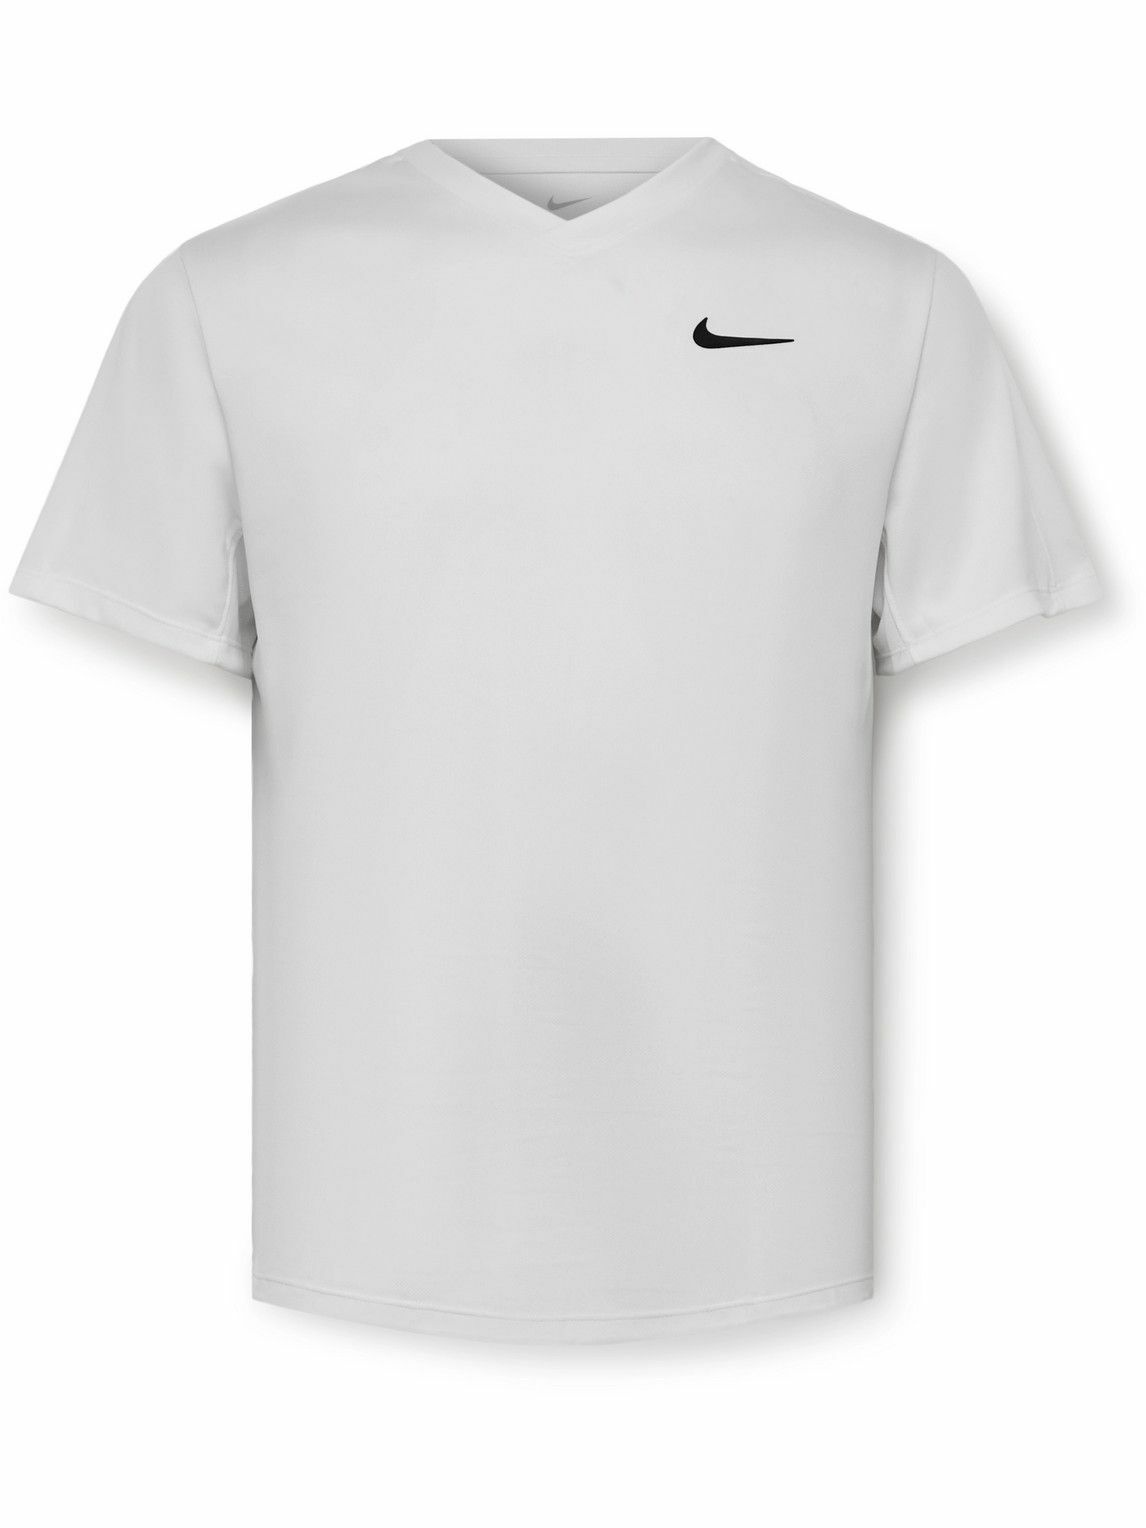 Nike Tennis - Victory Dri-FIT Mesh Tennis T-Shirt - White Nike Tennis